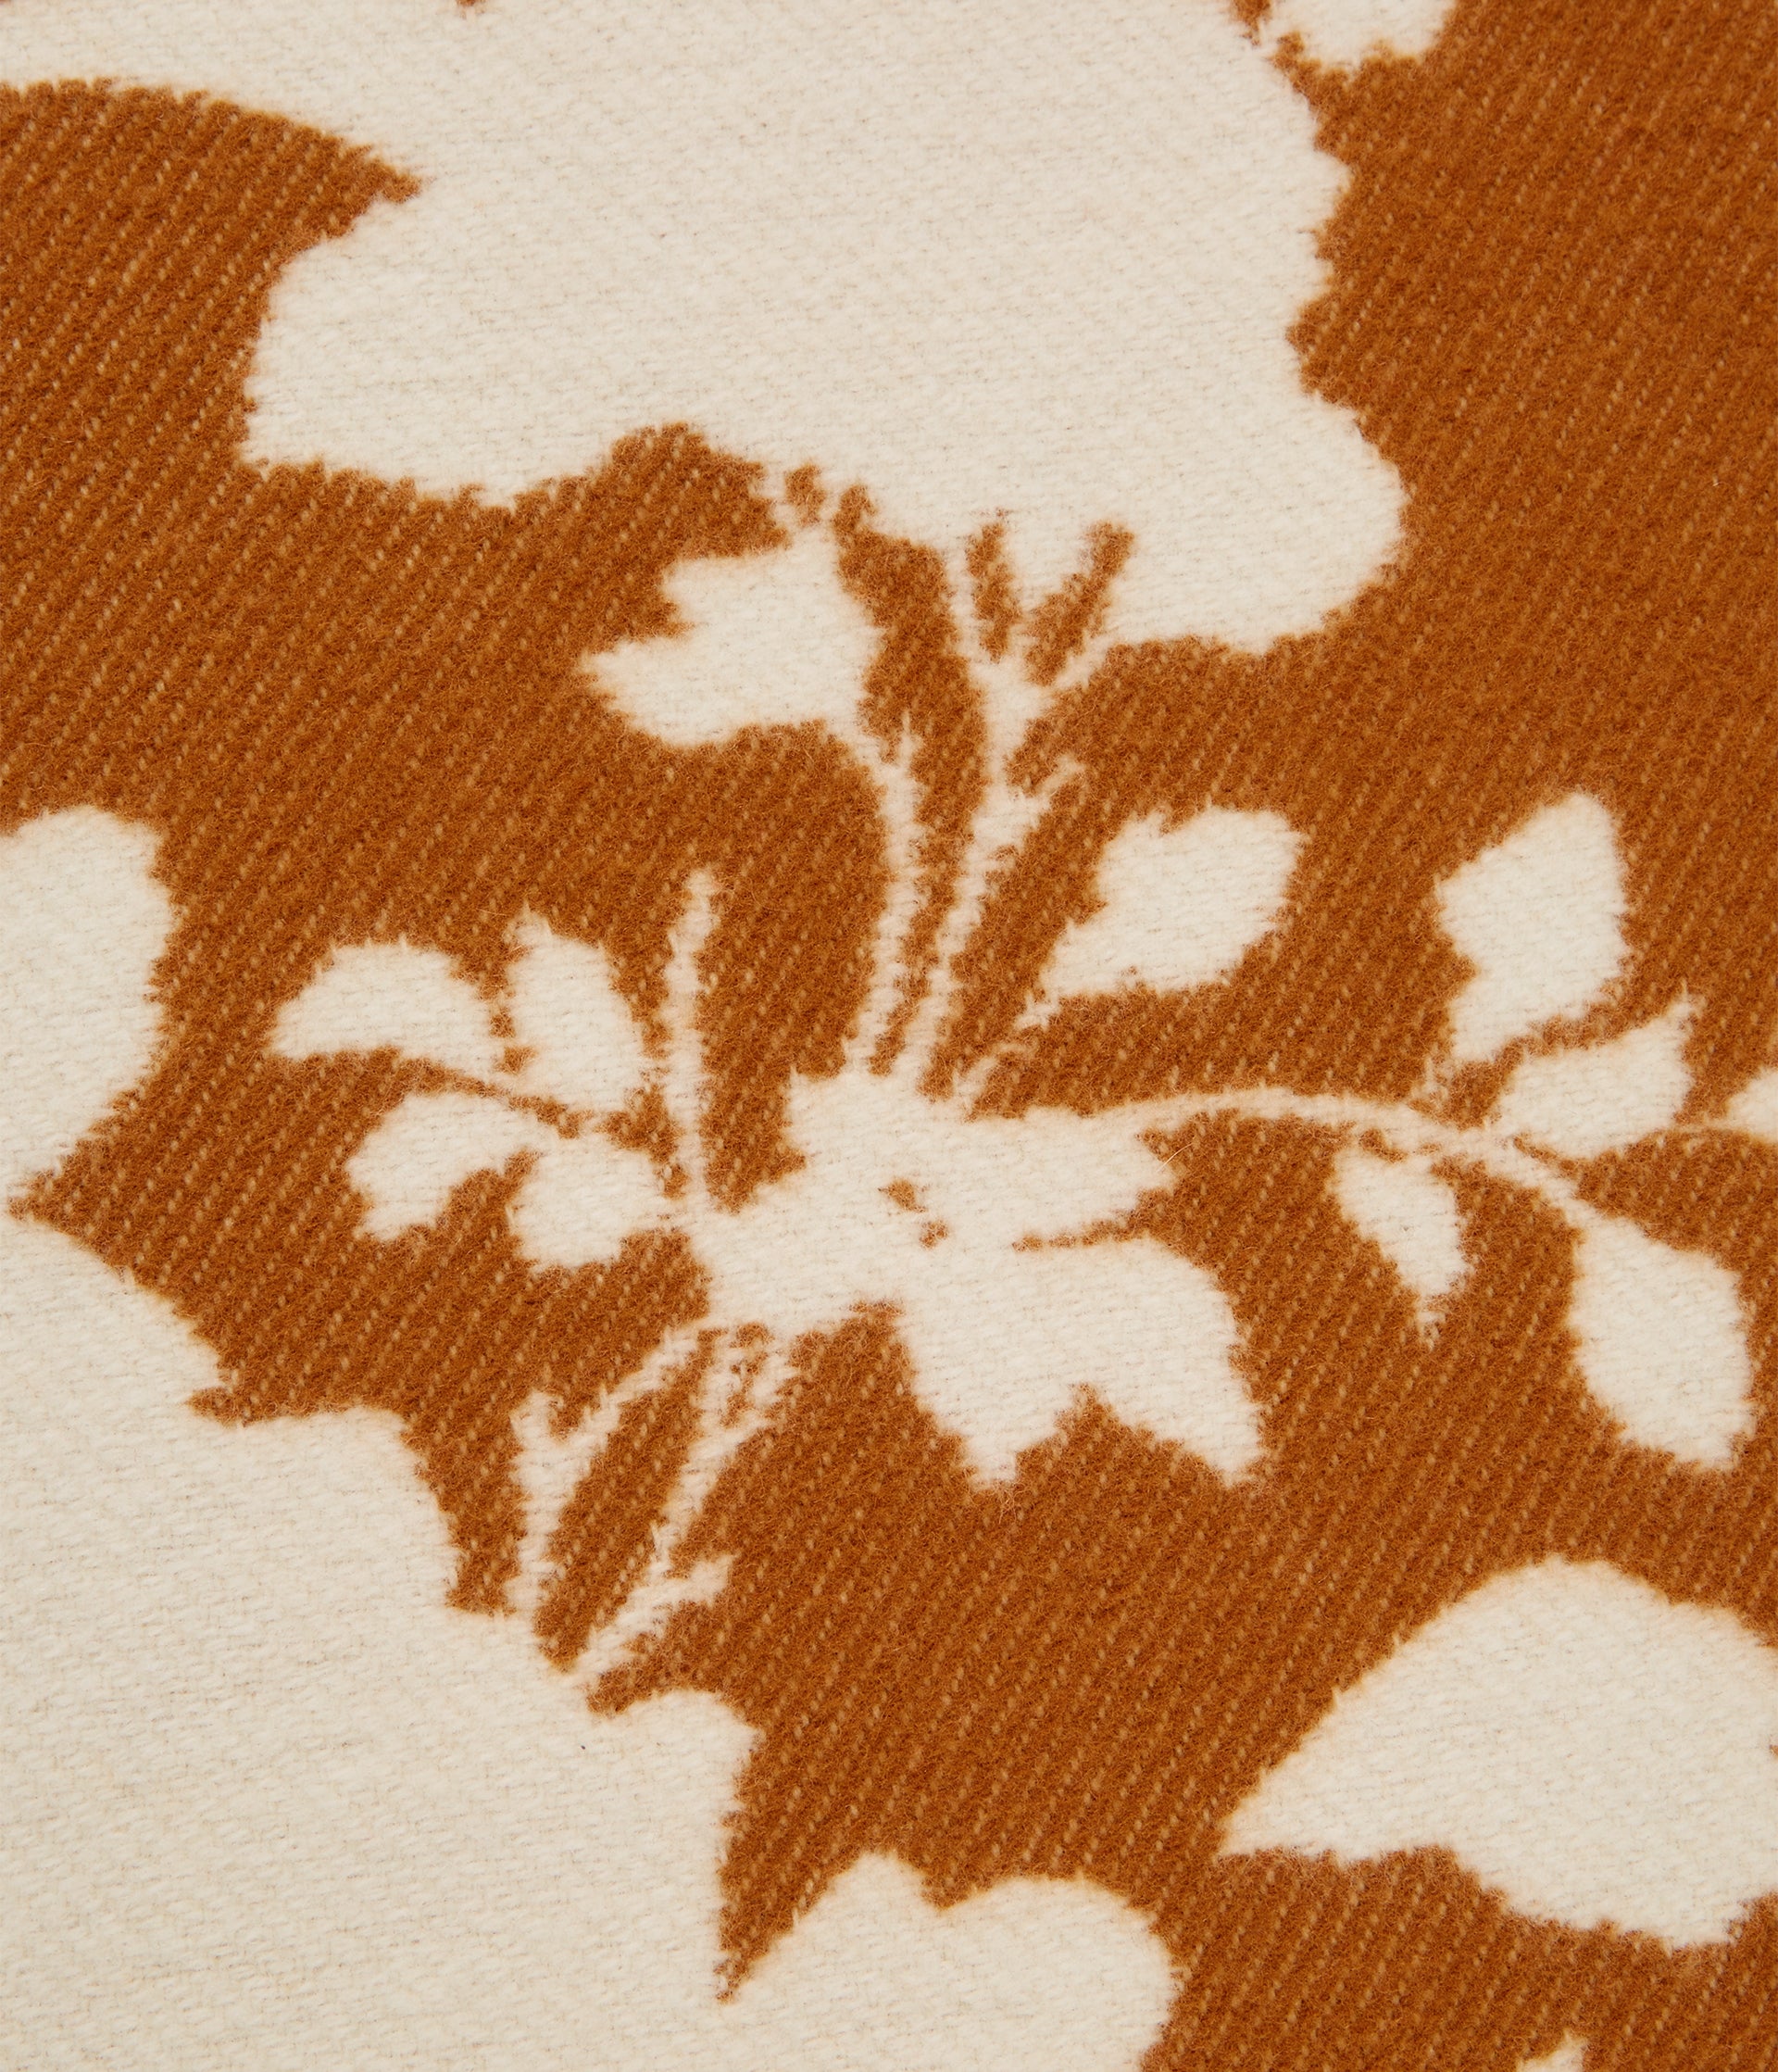 Fonteyn Rose print in camel and cream on the latest blanket design from award winning designer Erdem.